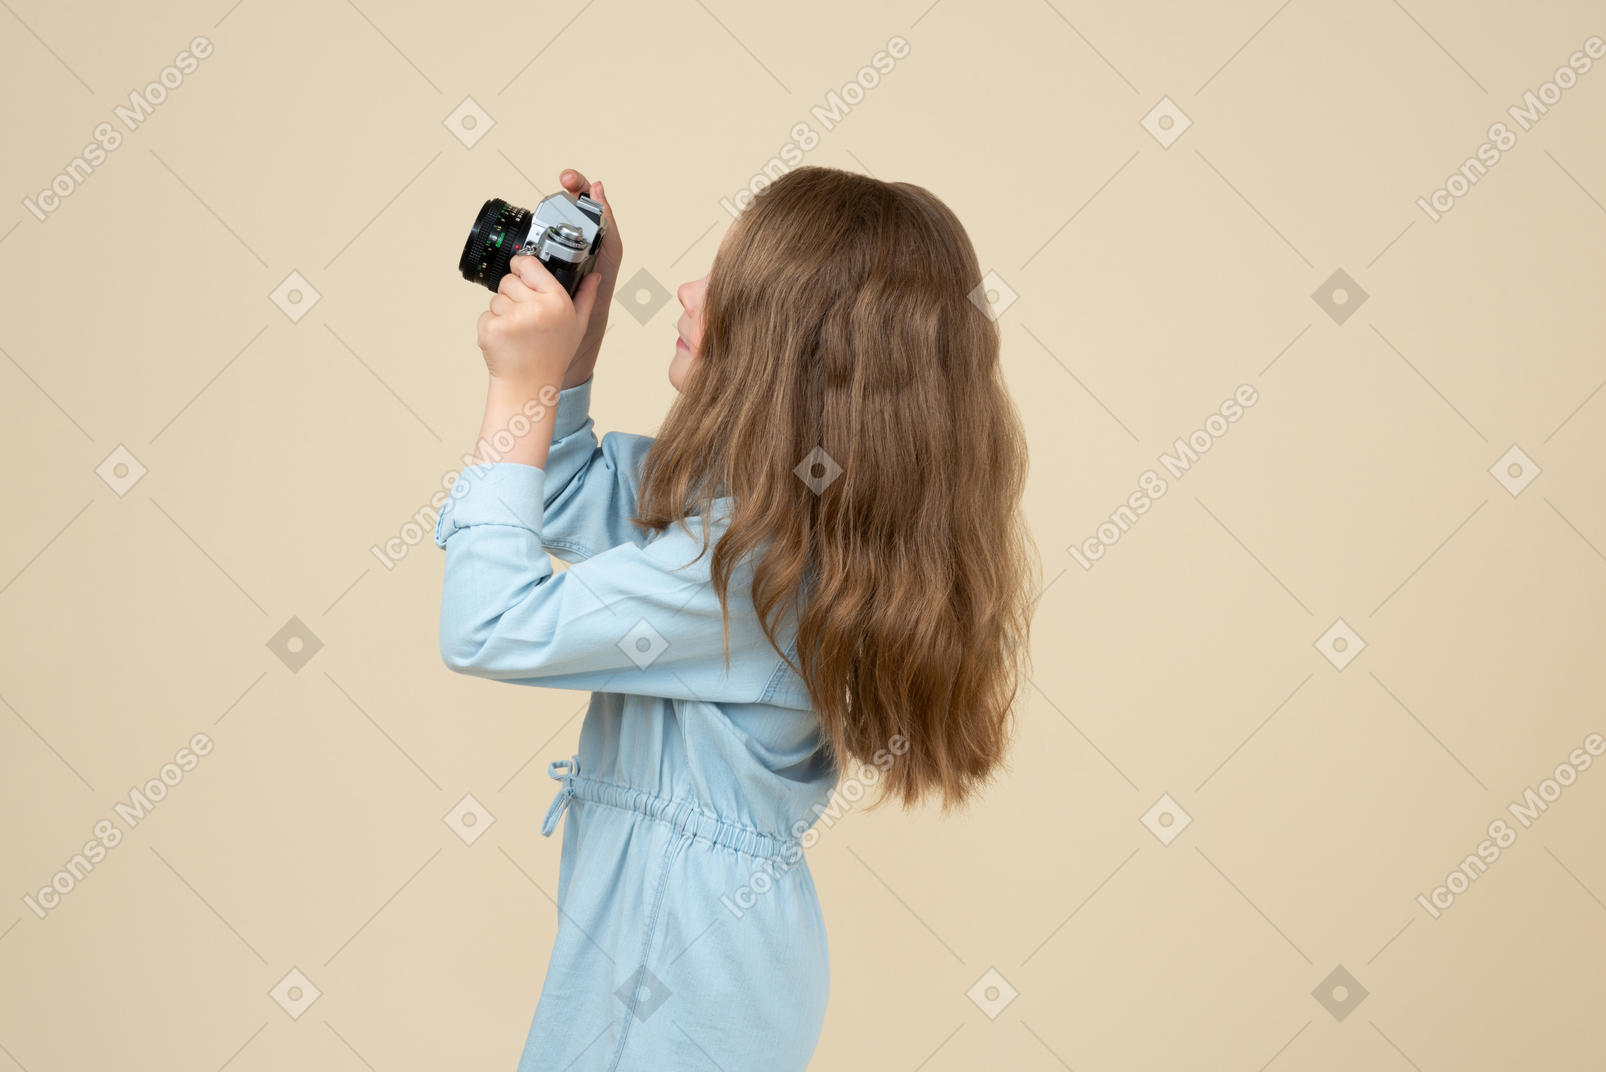 Милая маленькая девочка с фотоаппаратом